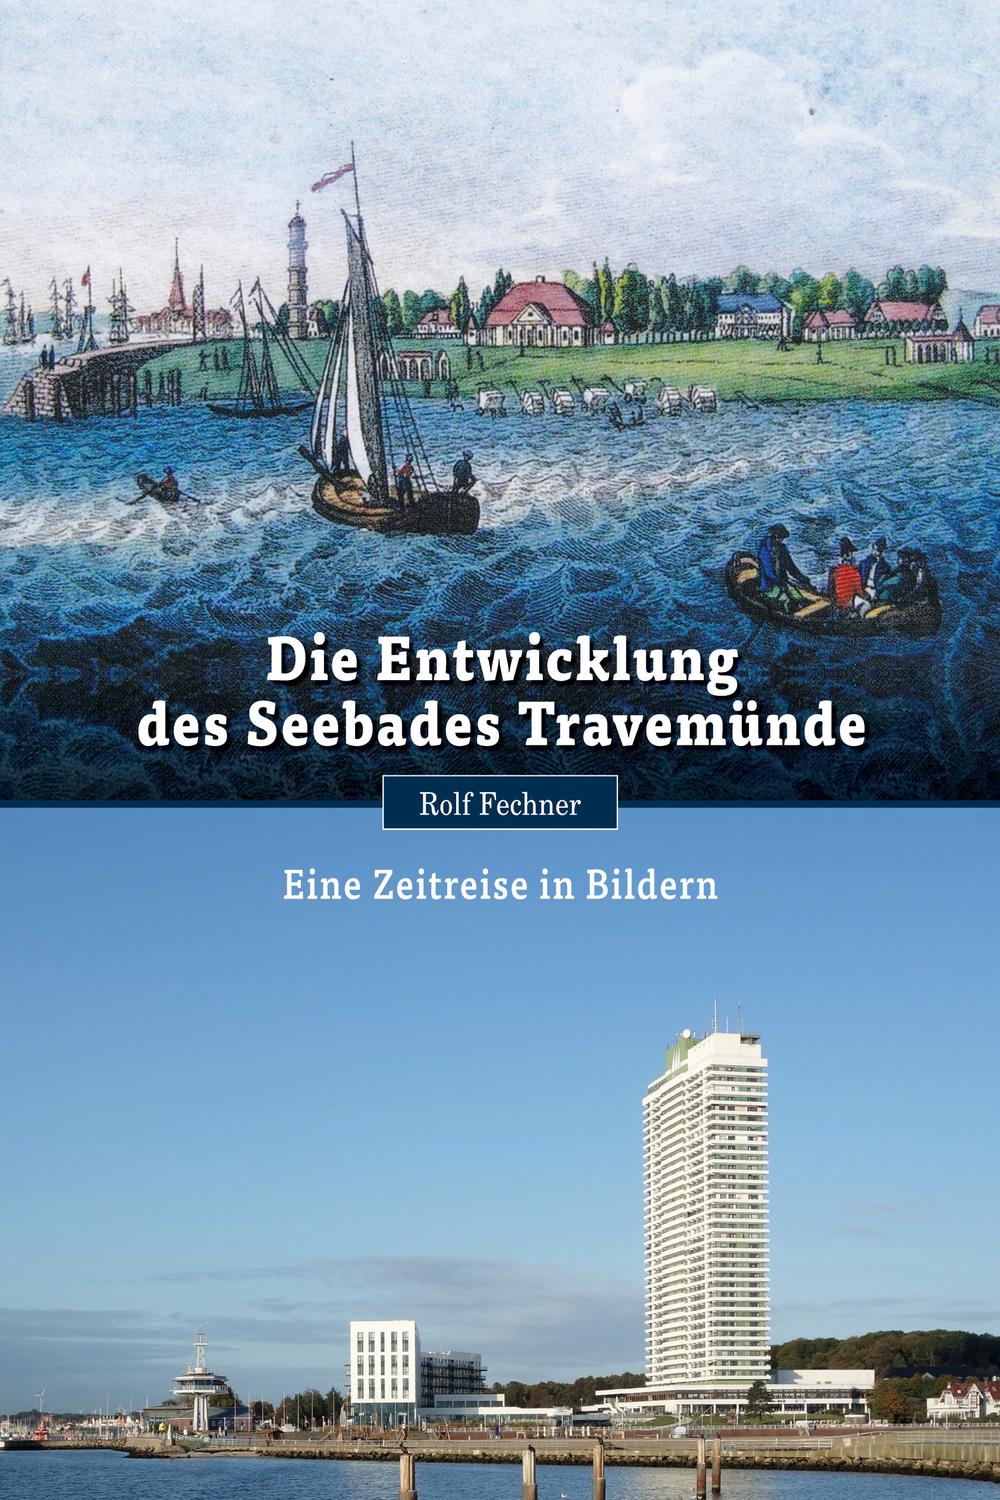 Die Entwicklung des Seebades Travemünde - Rolf Fechner